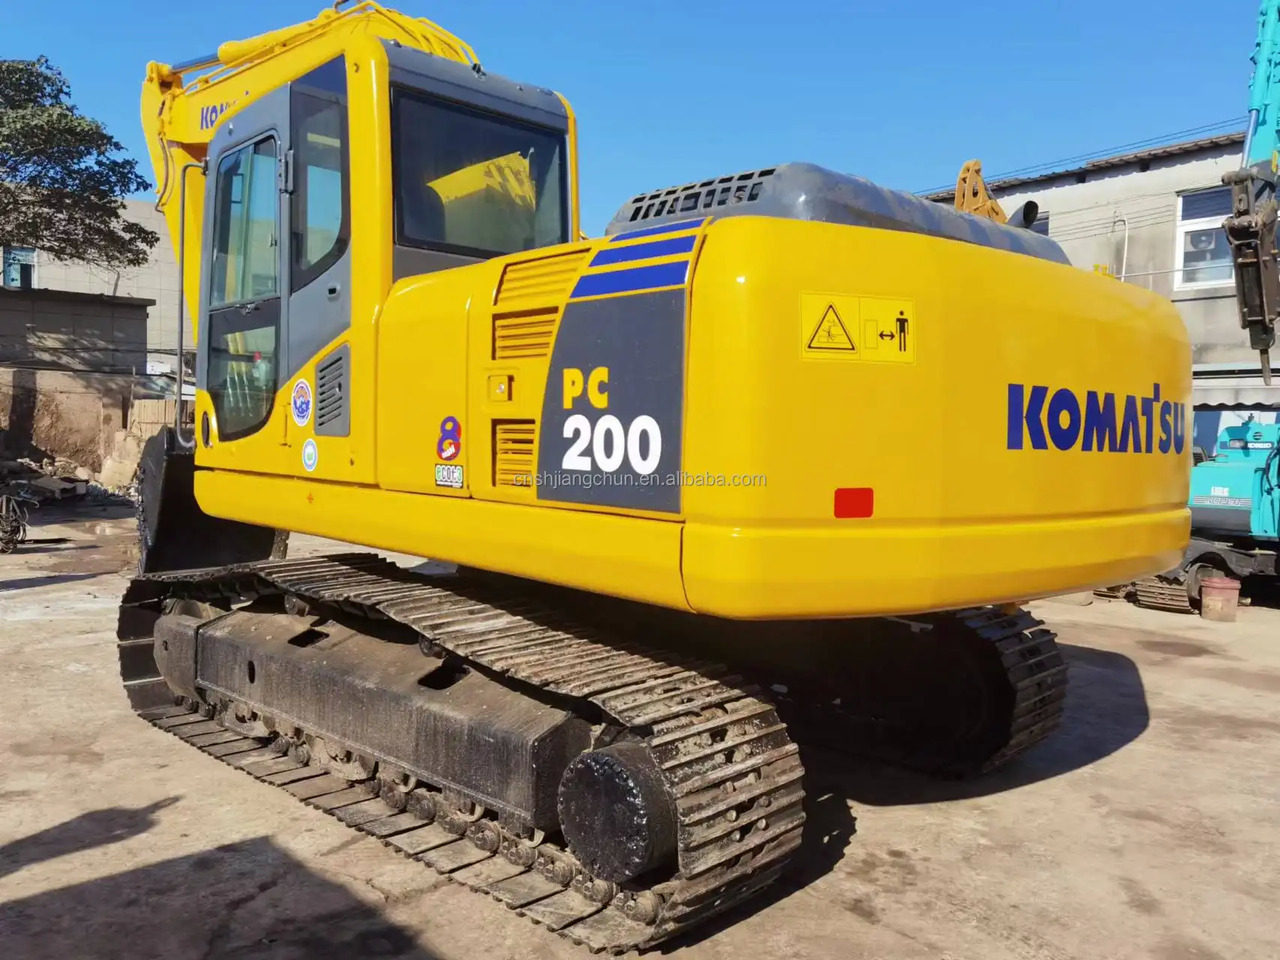 Гусеничный экскаватор High quality Japan Komatsu PC200-8 used excavator machine 20 ton Komatsu Machinery Digger pc200-8 pc220-8 Used Excavator: фото 4